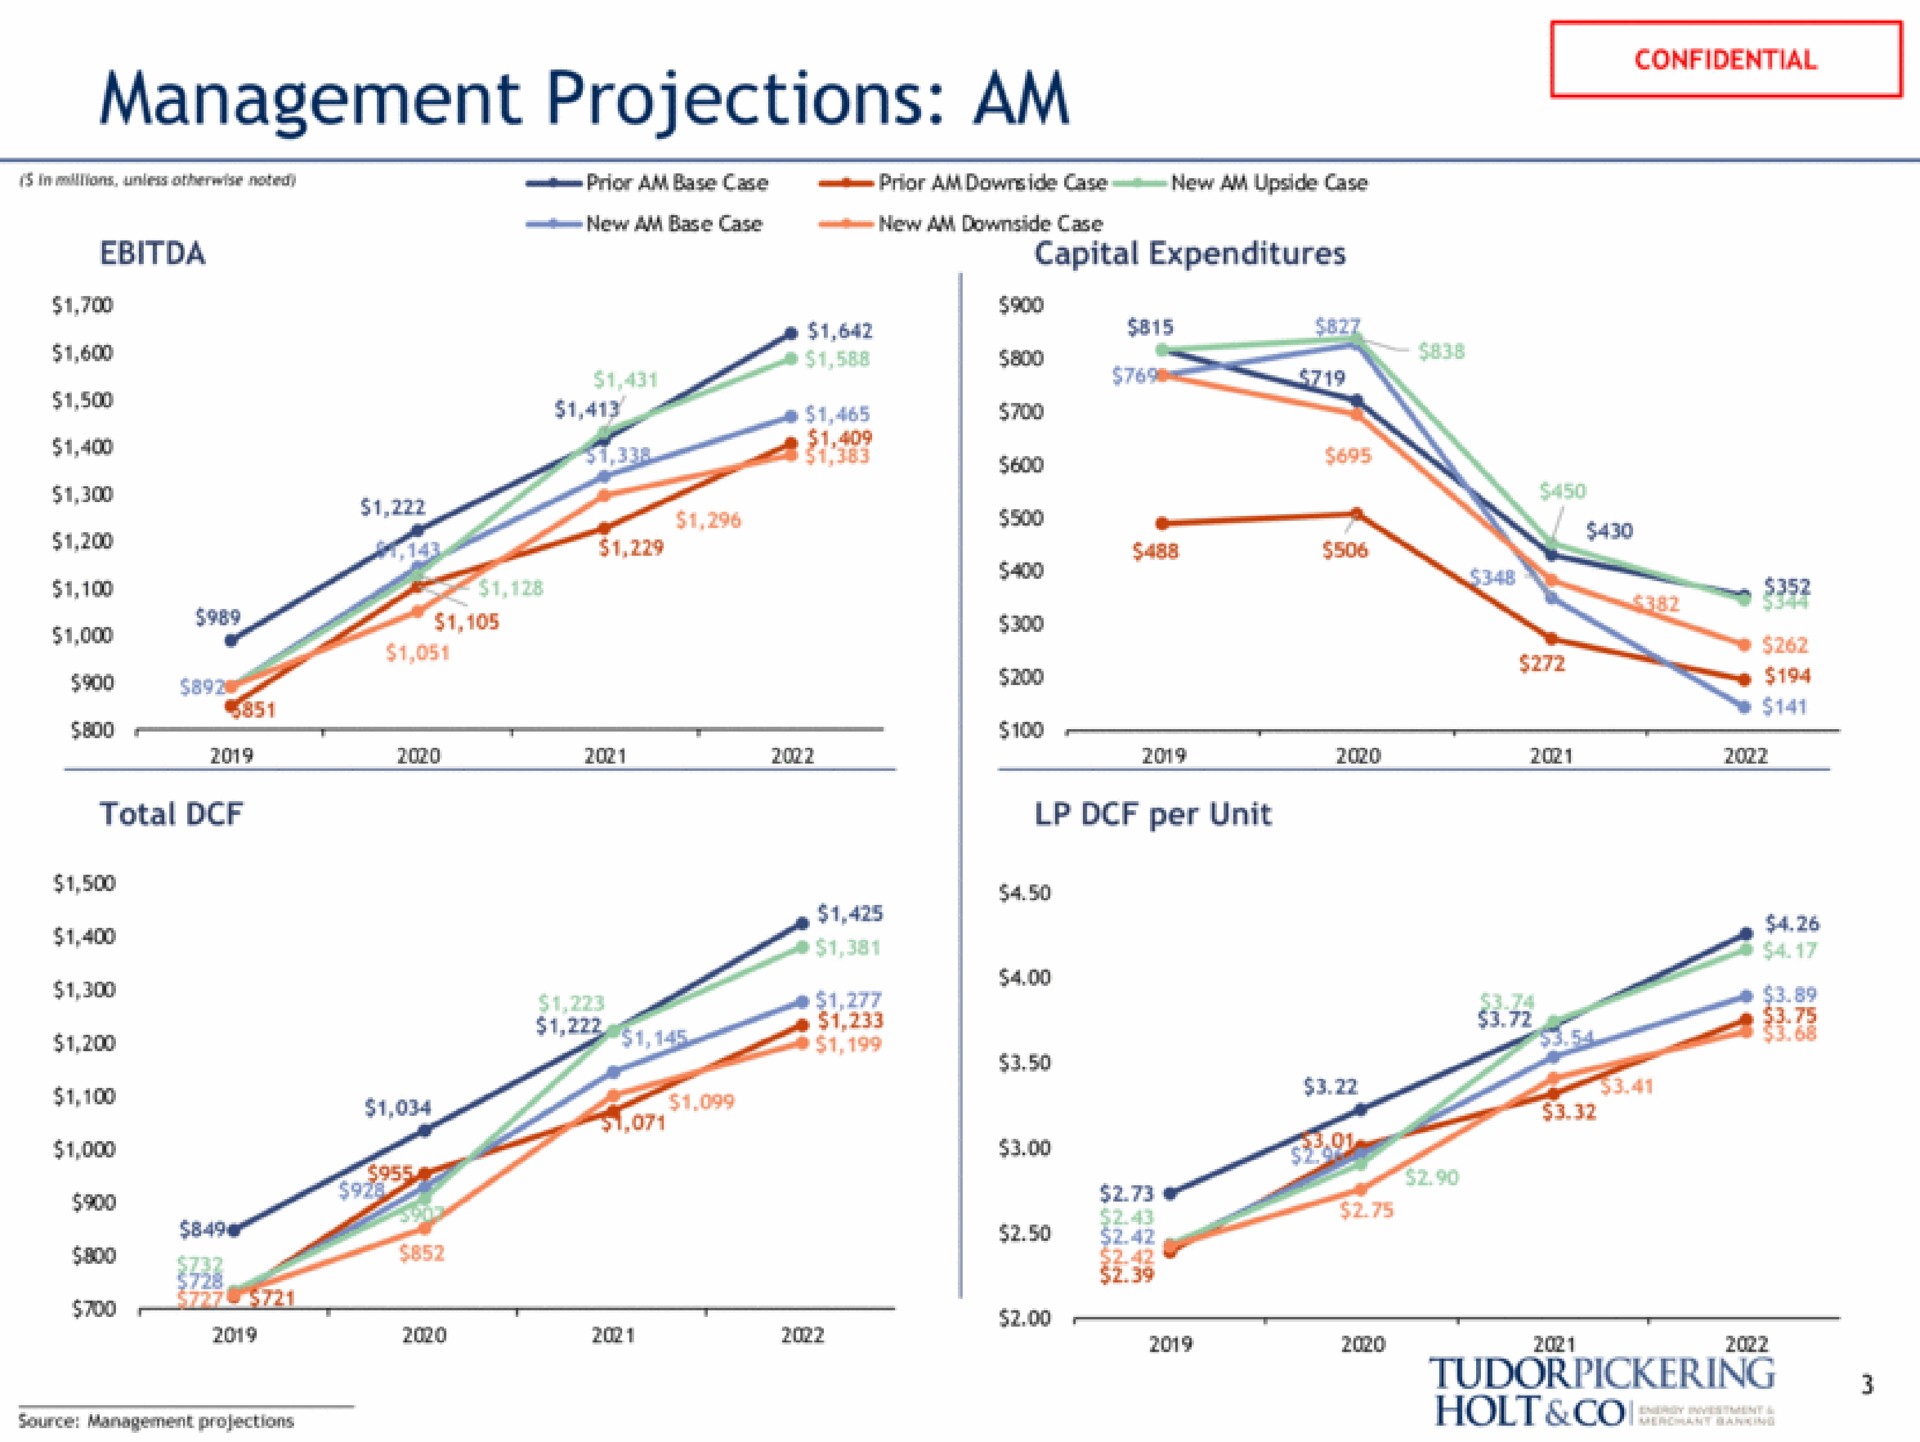 management projections am son a a source management projections holt | Tudor, Pickering, Holt & Co